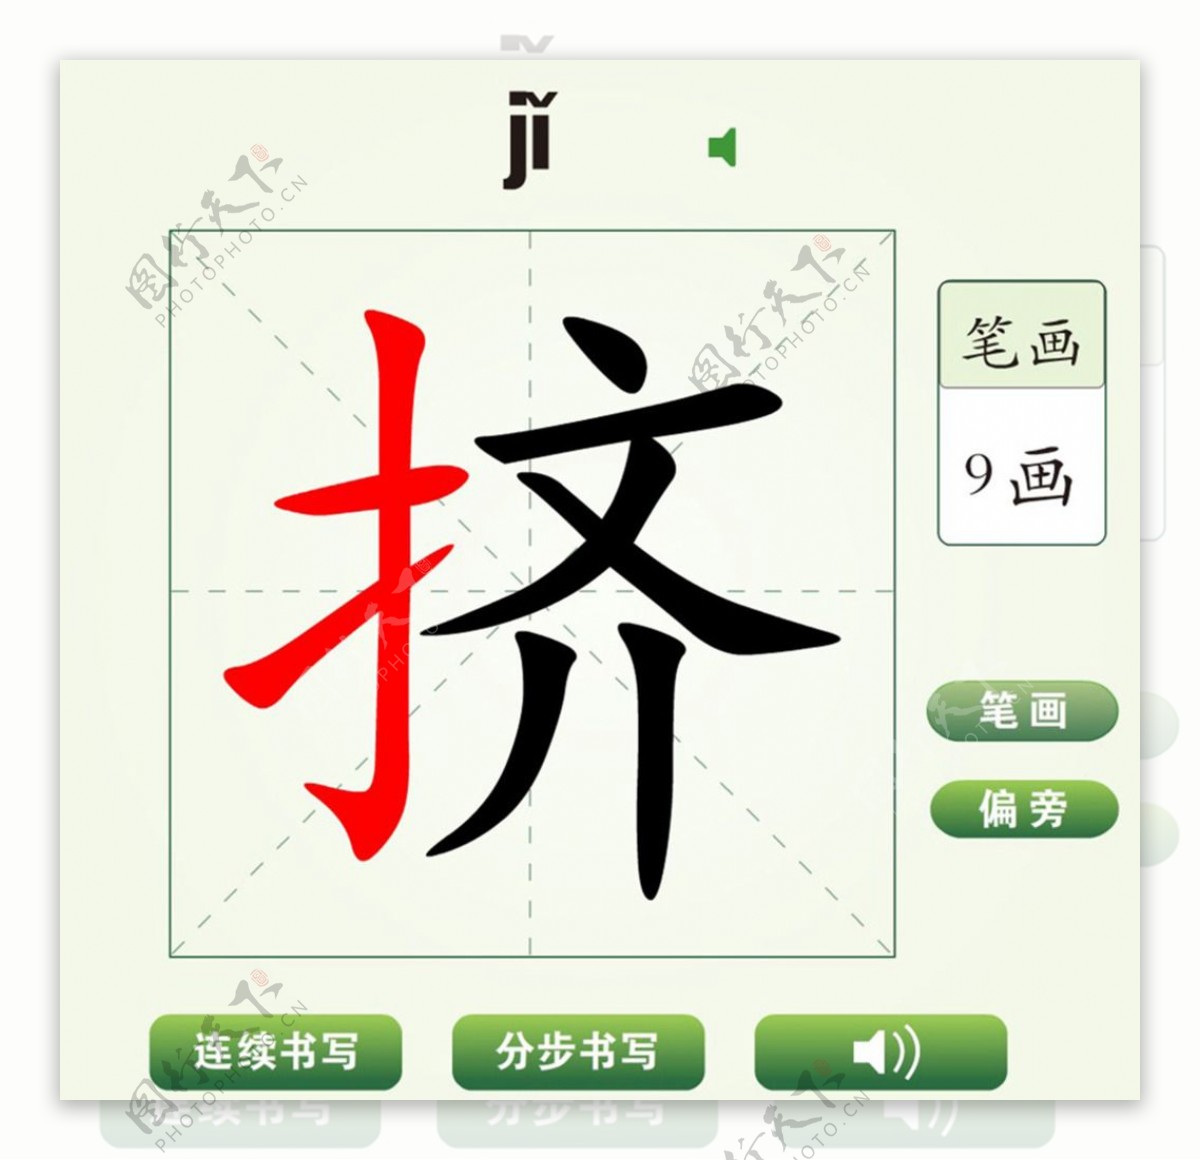 中国汉字挤字笔画教学动画视频